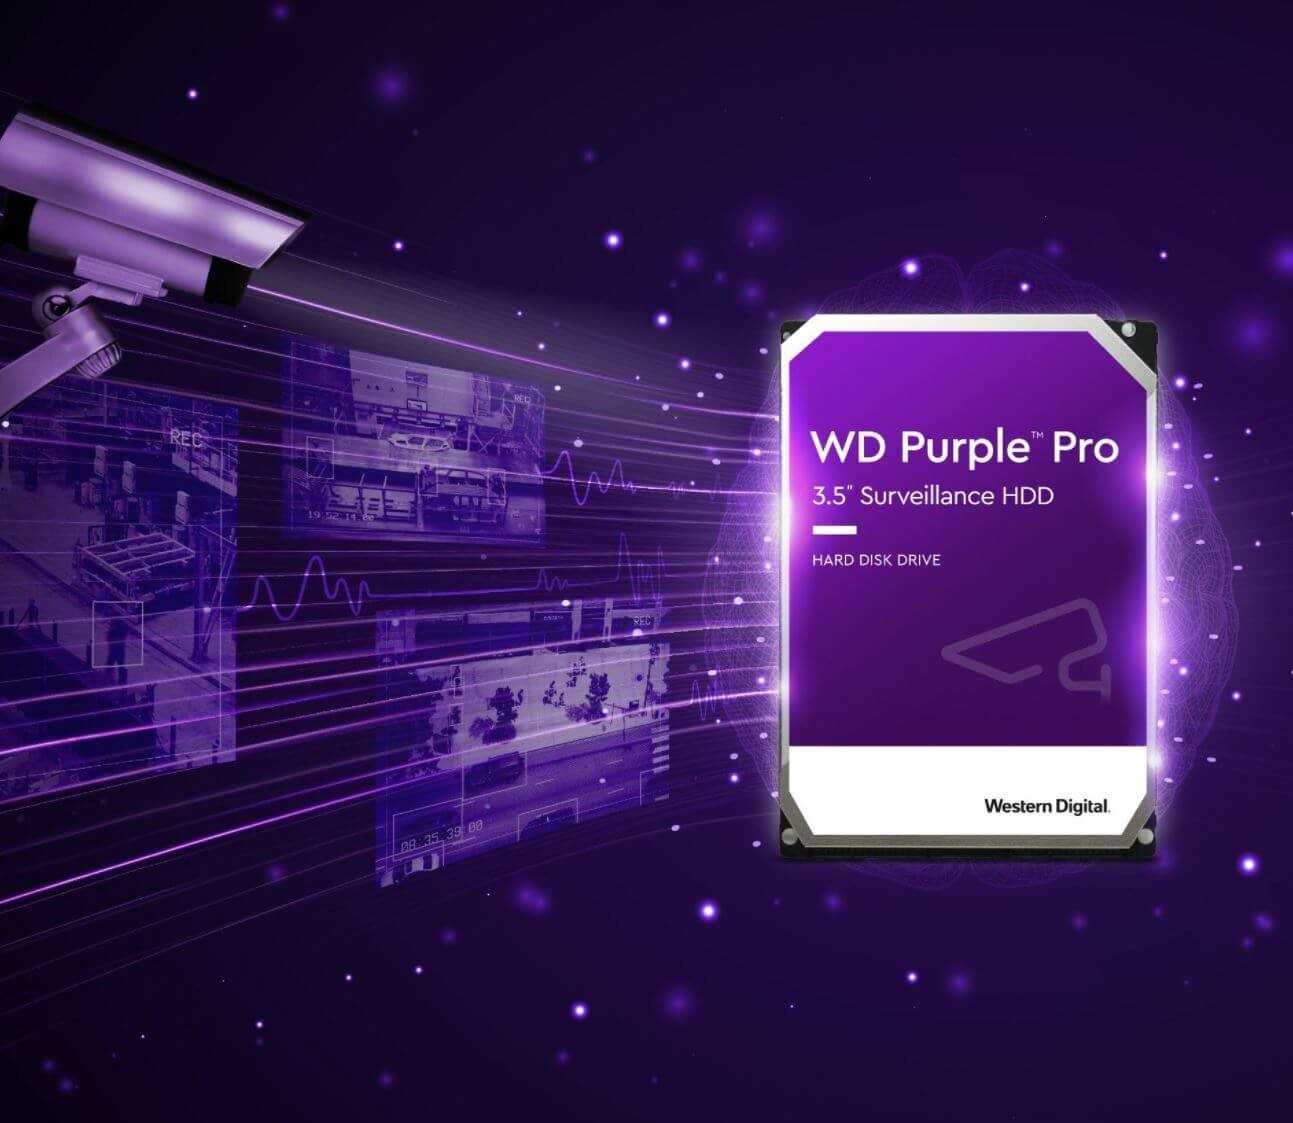 WD Purple Pro WD101PURP 10TB 7200 RPM 256MB Cache SATA 6.0Gb/s 3.5"  Internal Hard Drive Desktop Internal Hard Drives - Newegg.com